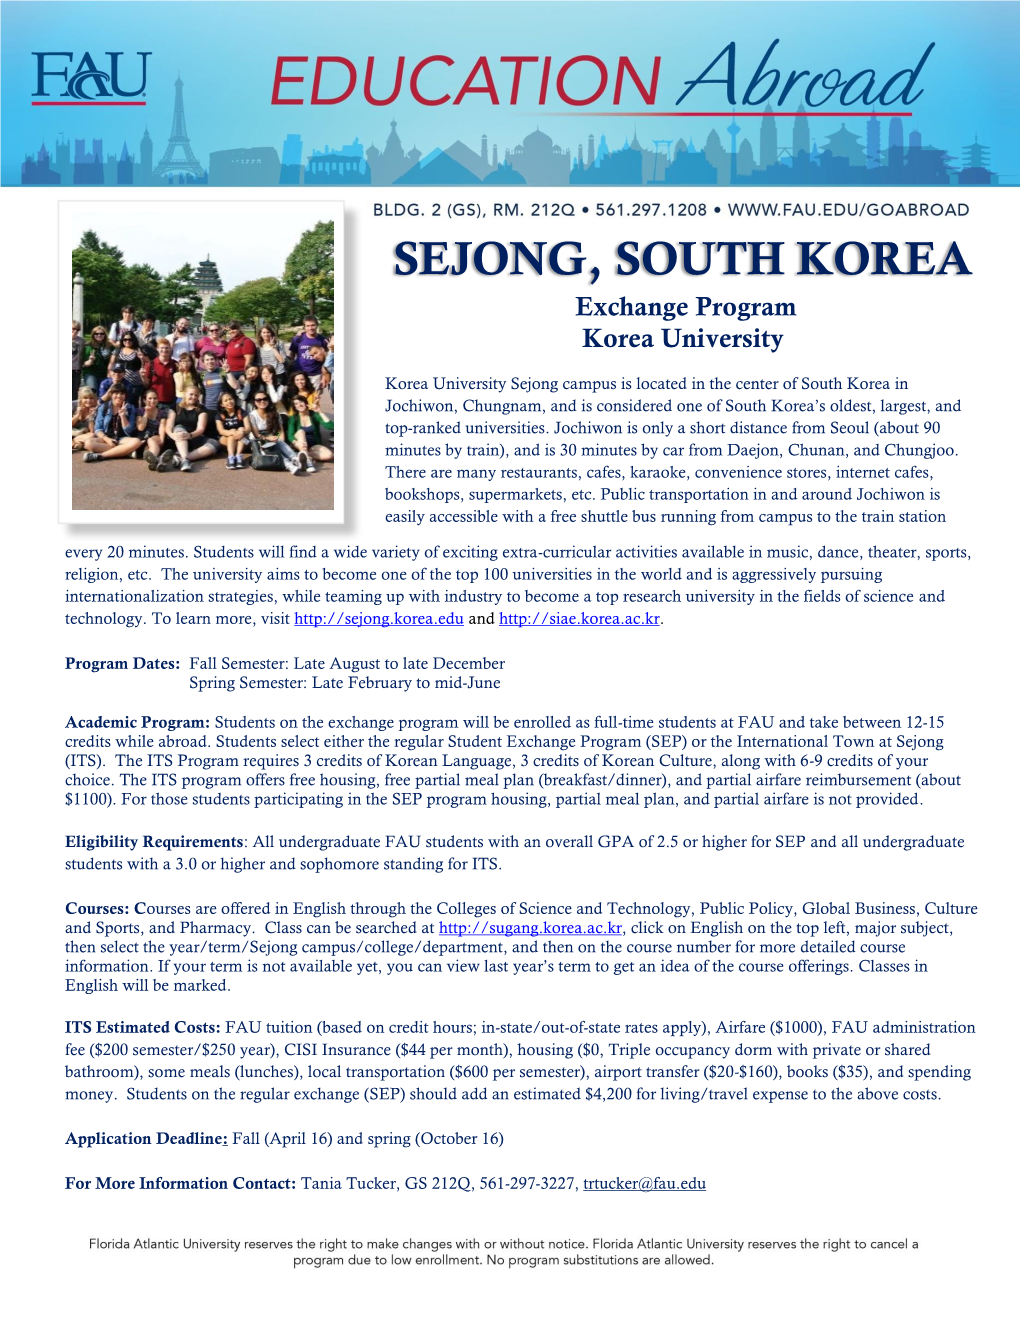 SEJONG, SOUTH KOREA Exchange Program Korea University